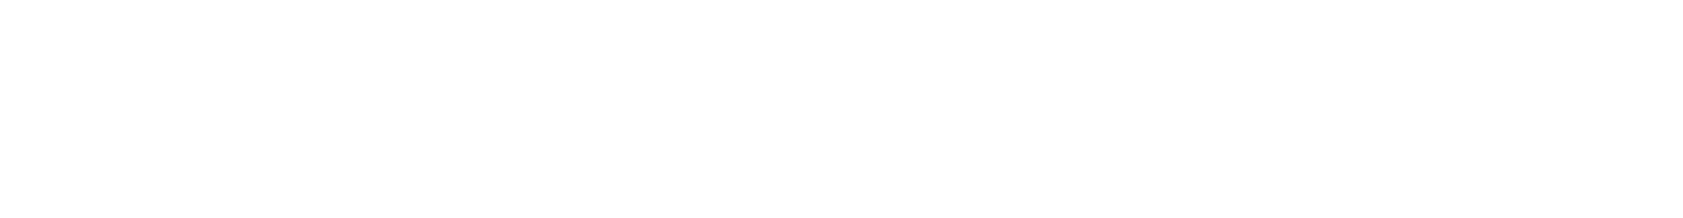 京都先端科学大学附属高等学校 OPEN CAMPUS 2020